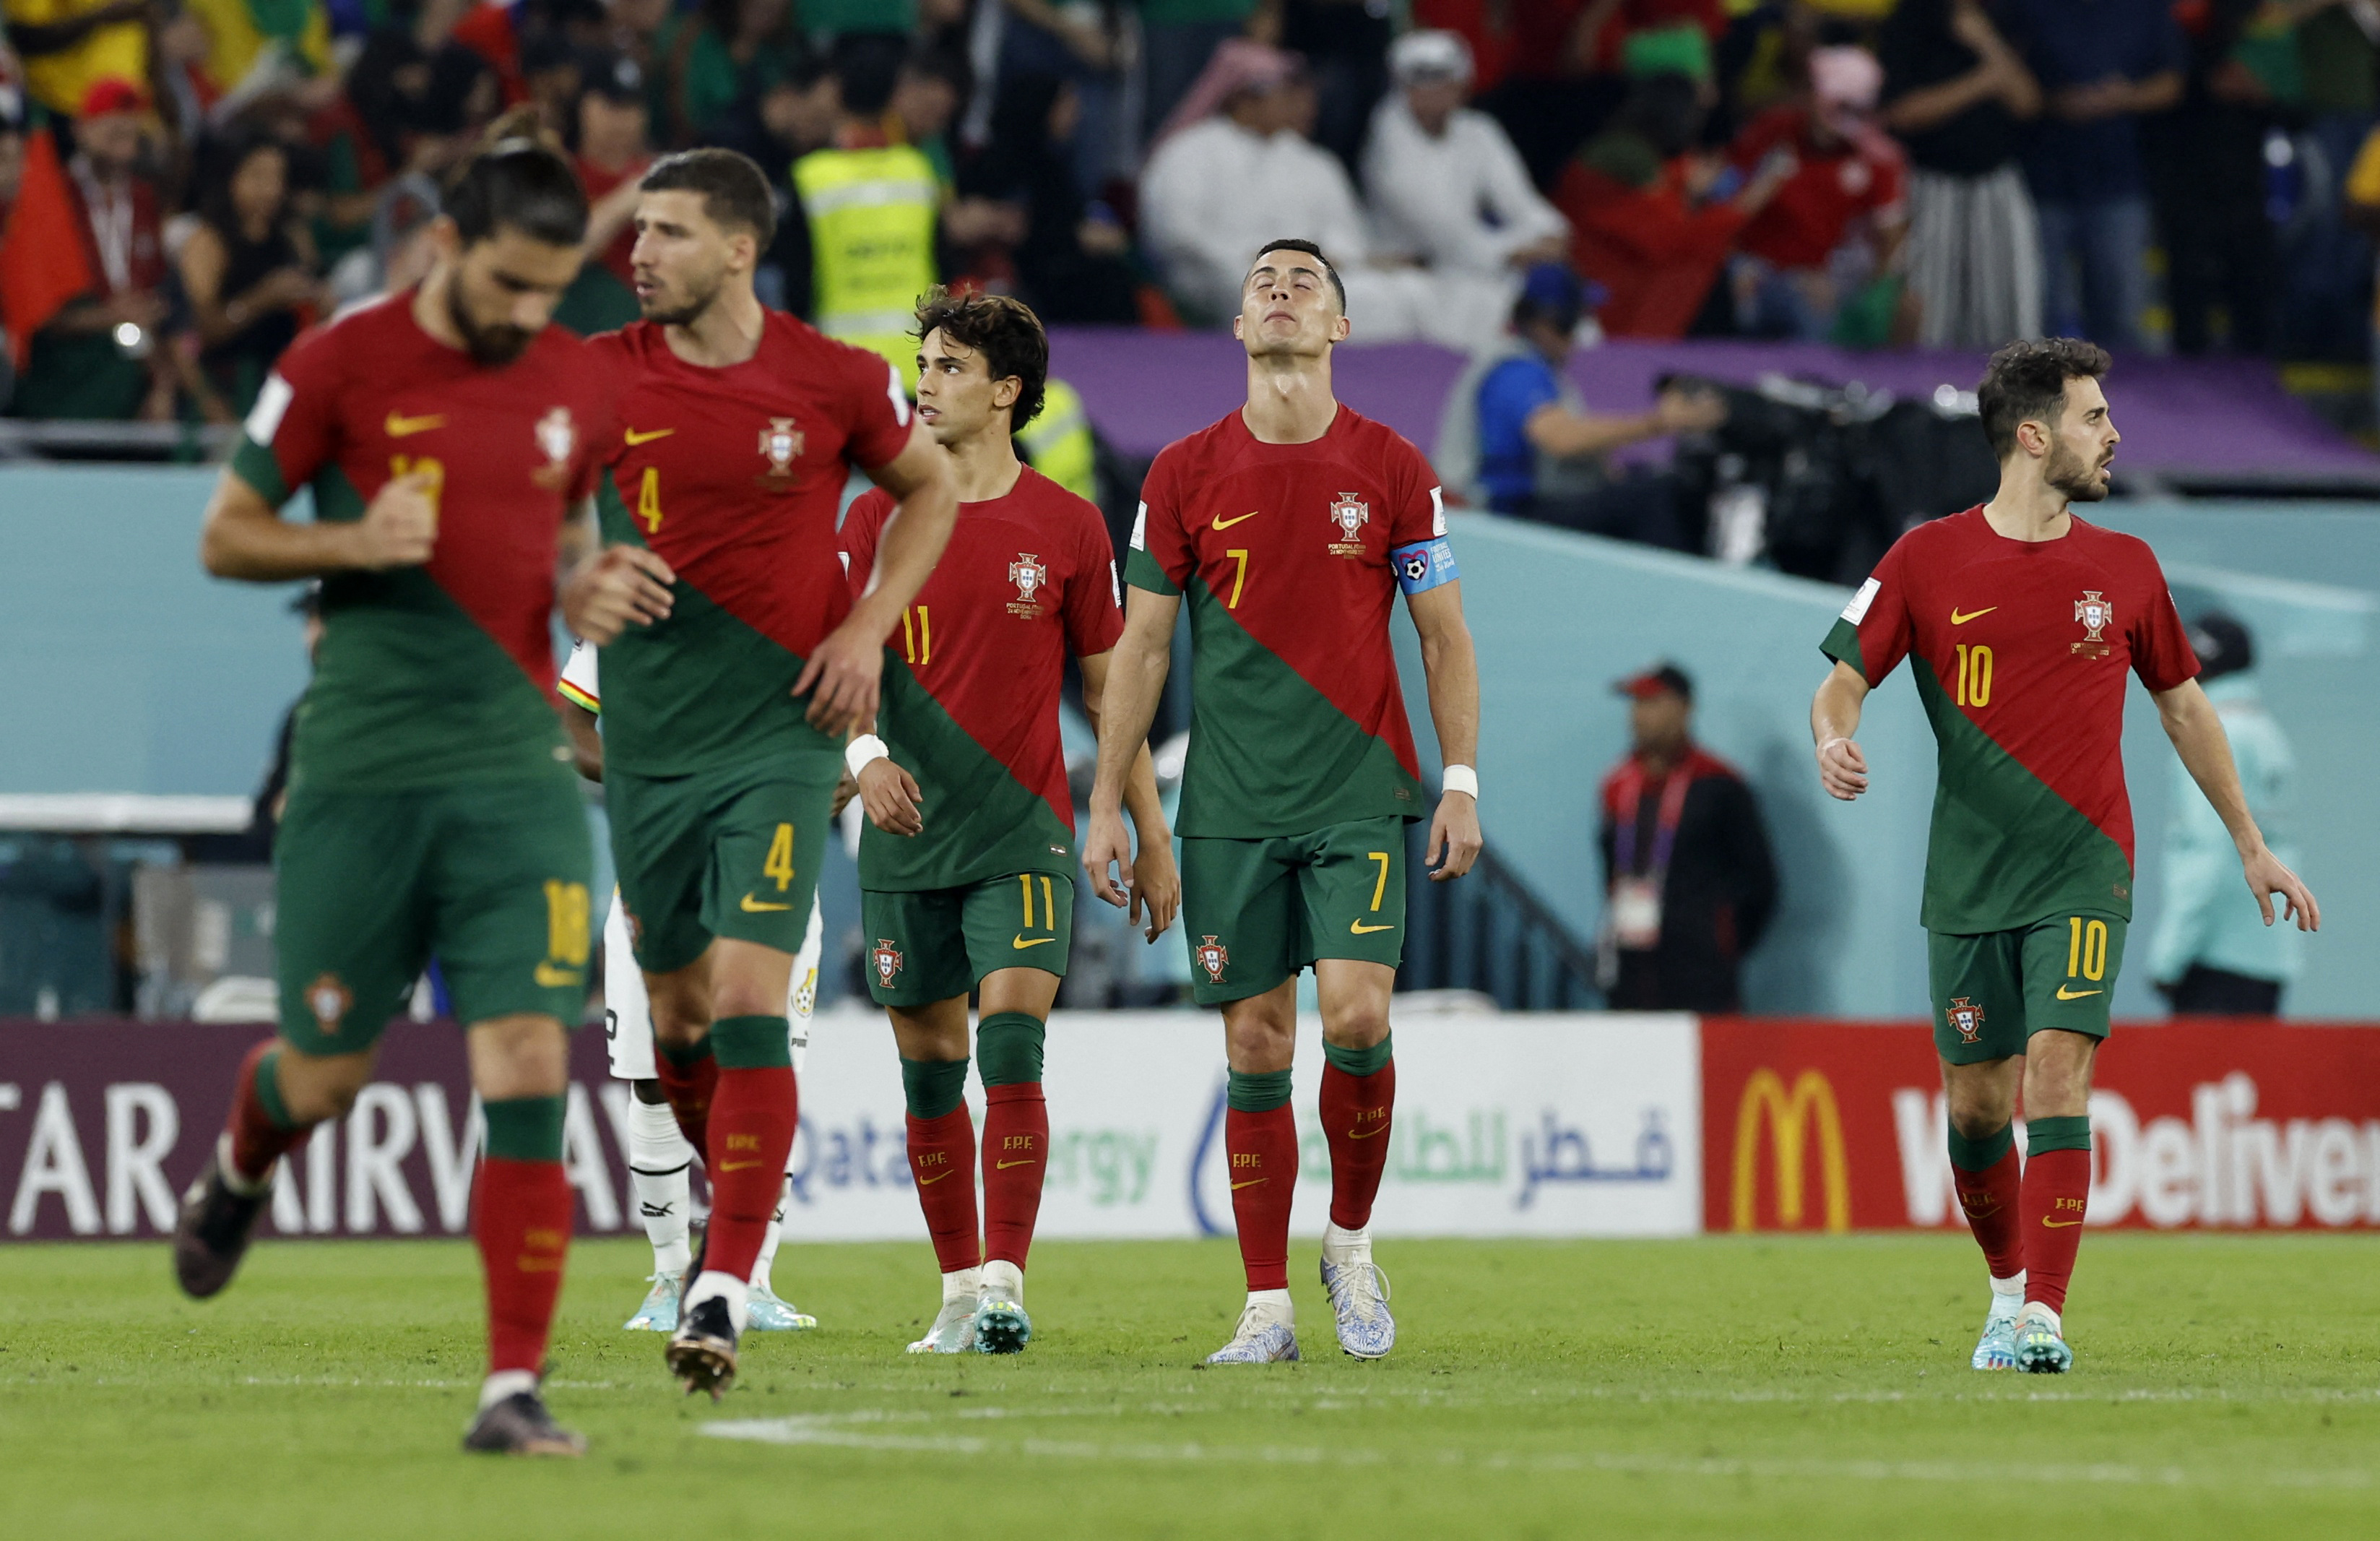 La tranquilidad en Portugal luego del 2-1. Foto: REUTERS/Albert Gea